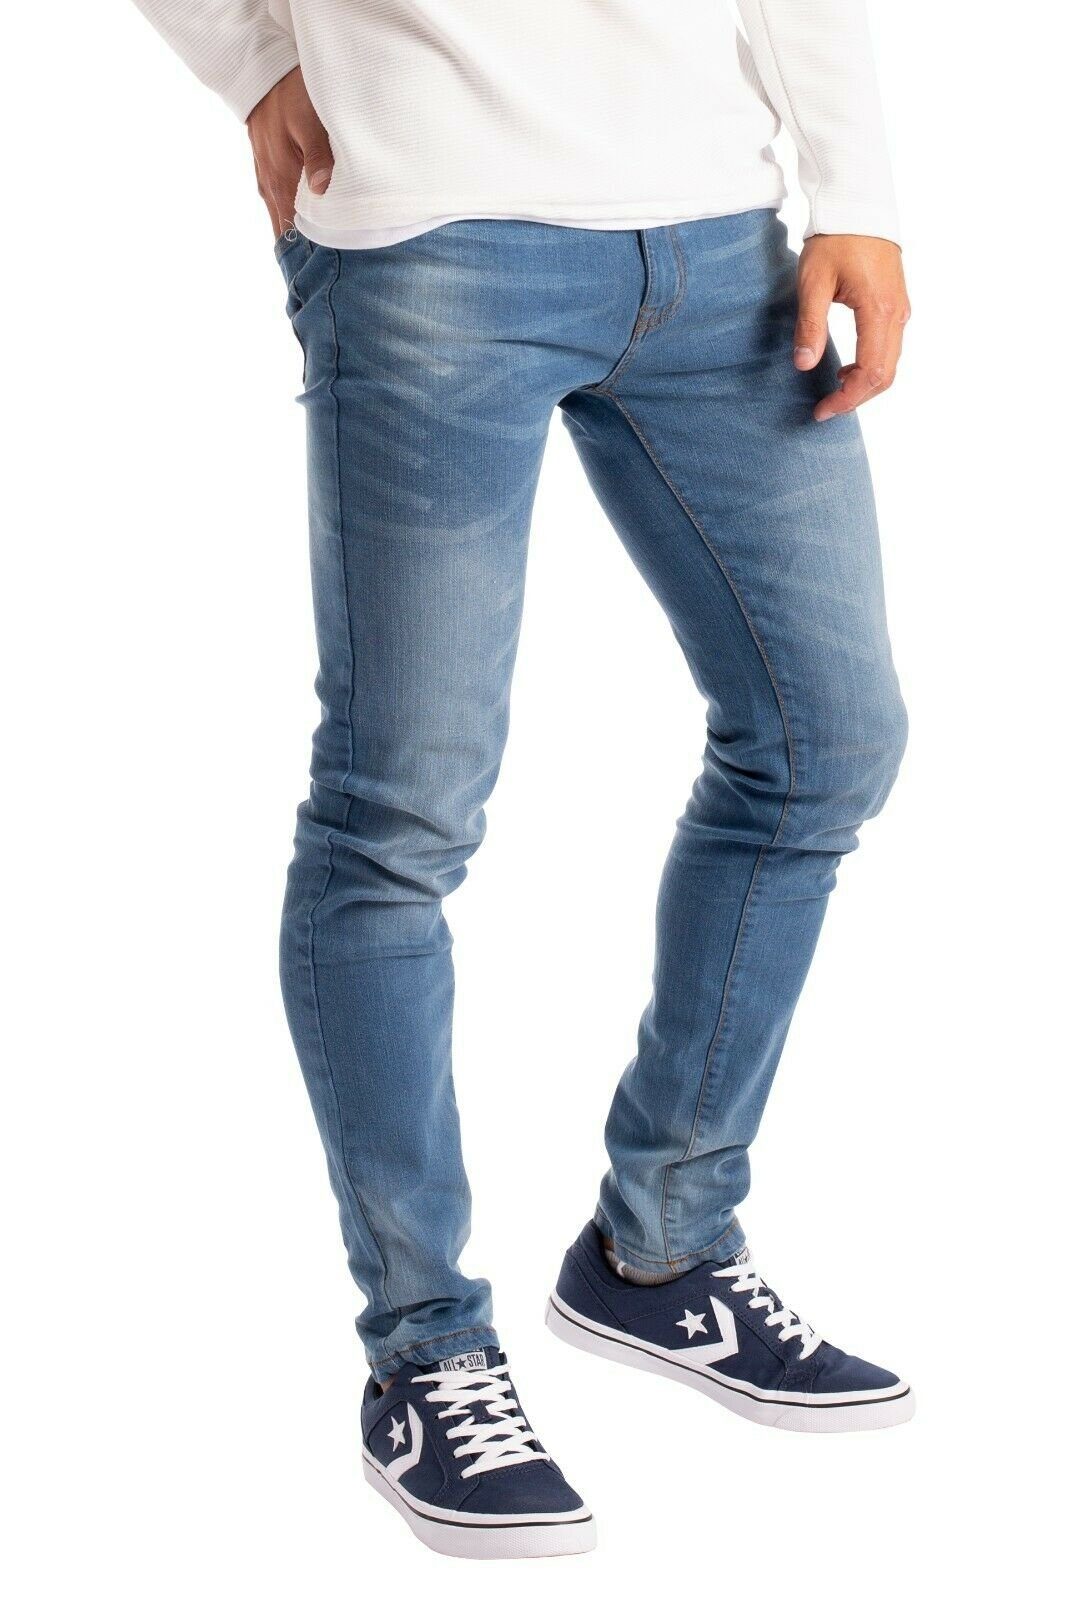 BlauerHafen Slim-fit-Jeans Herren Slim Fit Jeanshose Stretch Designer Hose  Super Flex Denim Pants Alle Größen von 28-40, erhältlich 30, 32 & 34  Beinlänge, 98% Baumwolle, 2% Stretch, 2 Seitentaschen, 2 Gesäßtaschen und 1  vordere Münztasche